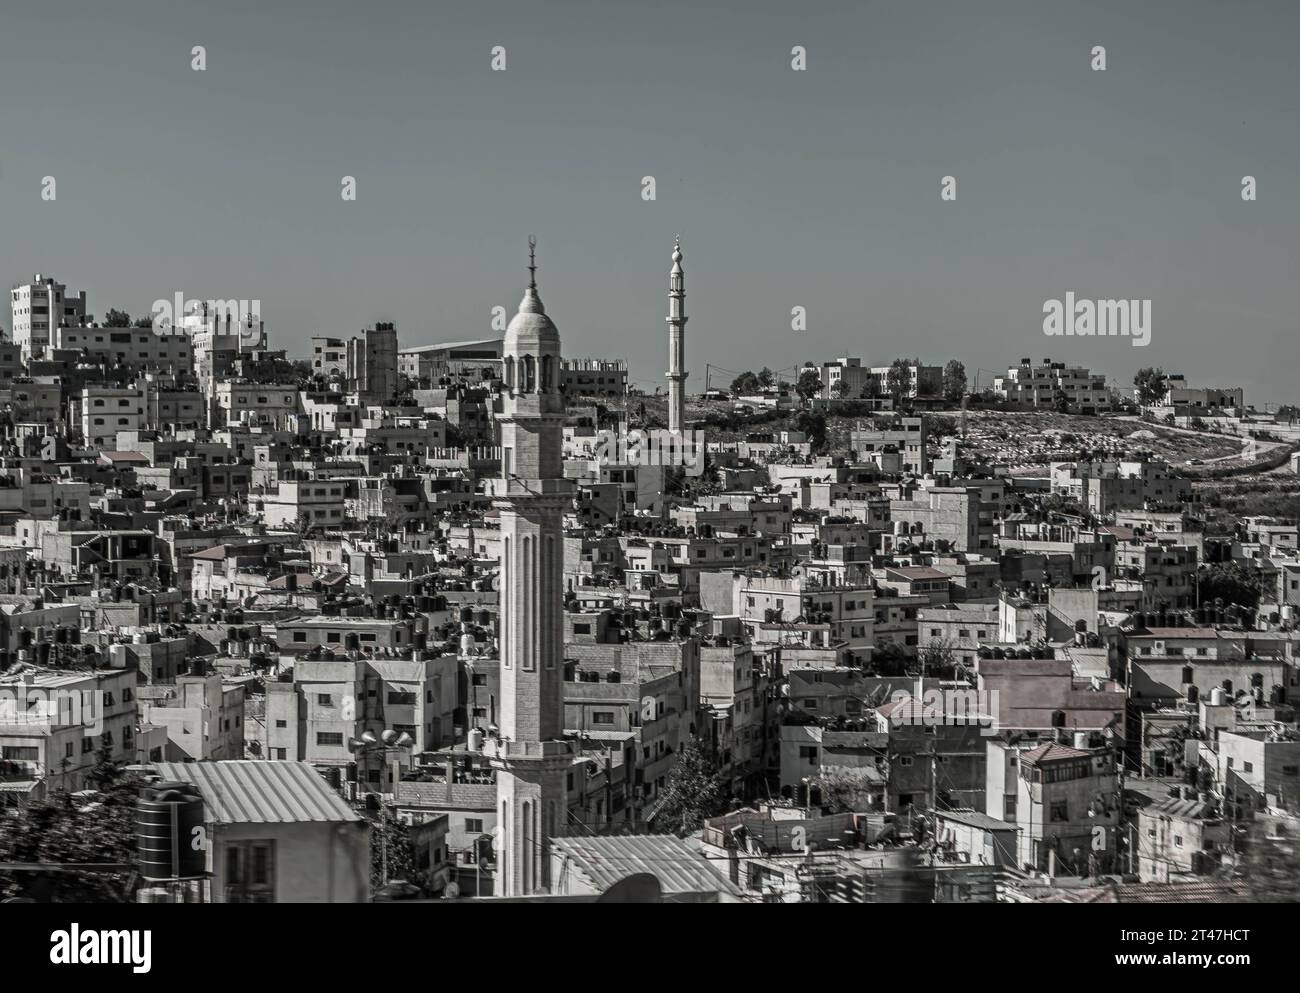 Le paysage urbain, les bâtiments, les toits et les minarets de mosquée, à Ramallah, la capitale de la Cisjordanie palestinienne. Banque D'Images